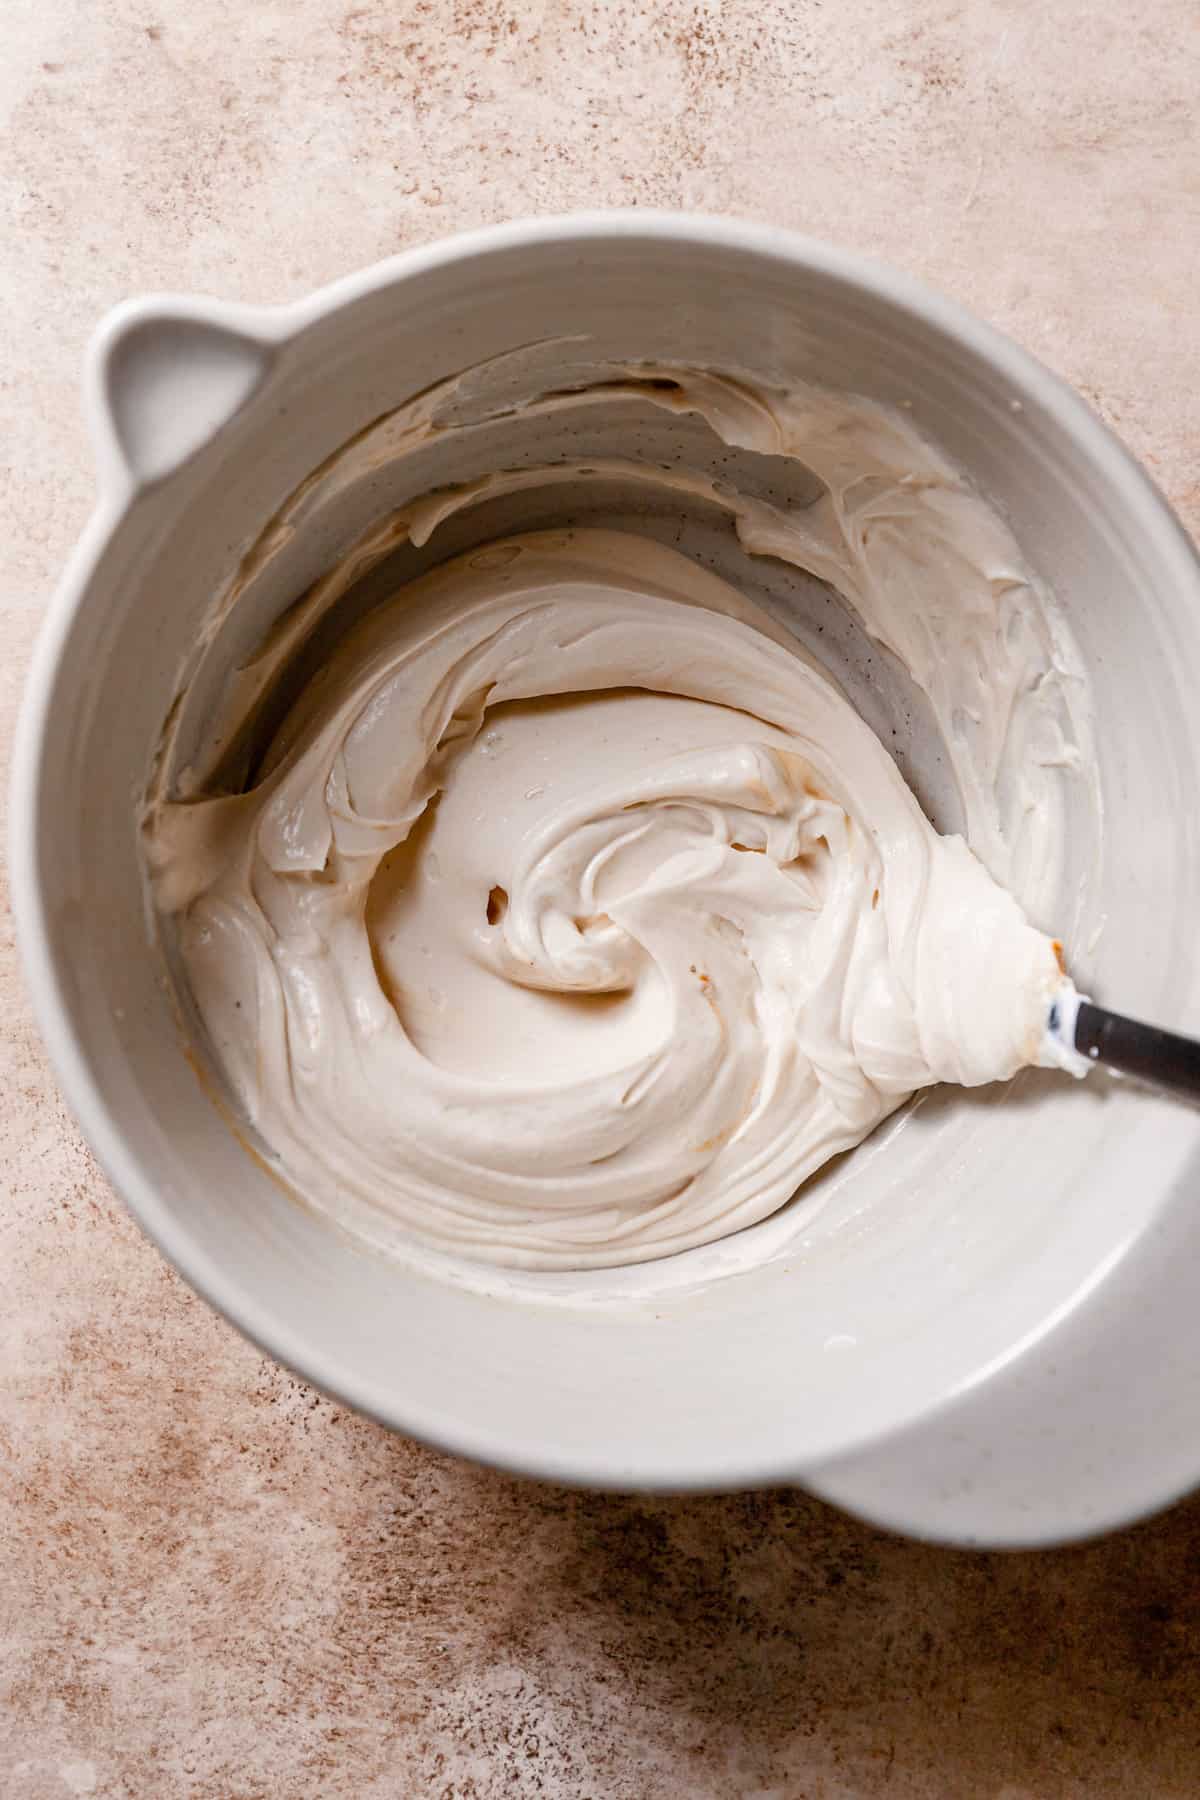 yogurt mixture in bowl